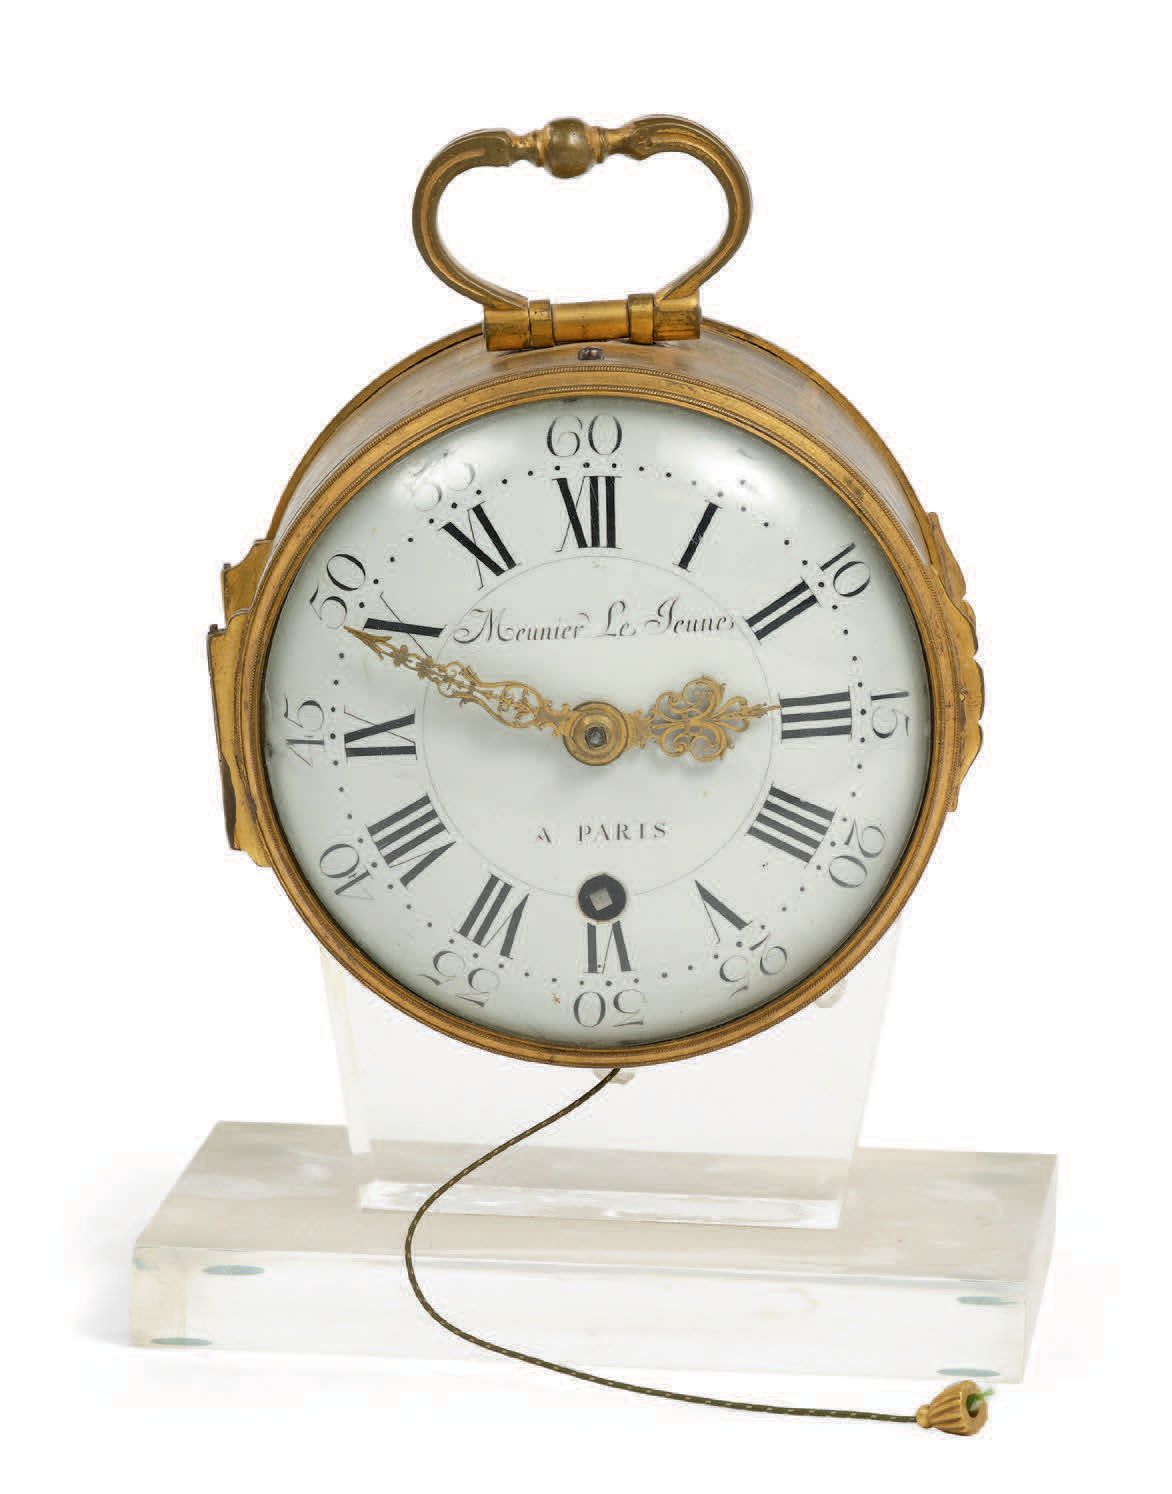 MEUNIER LE JEUNE, à Paris - Milieu XVIIIe siècle Horloge d'alcôve avec sonnerie
&hellip;